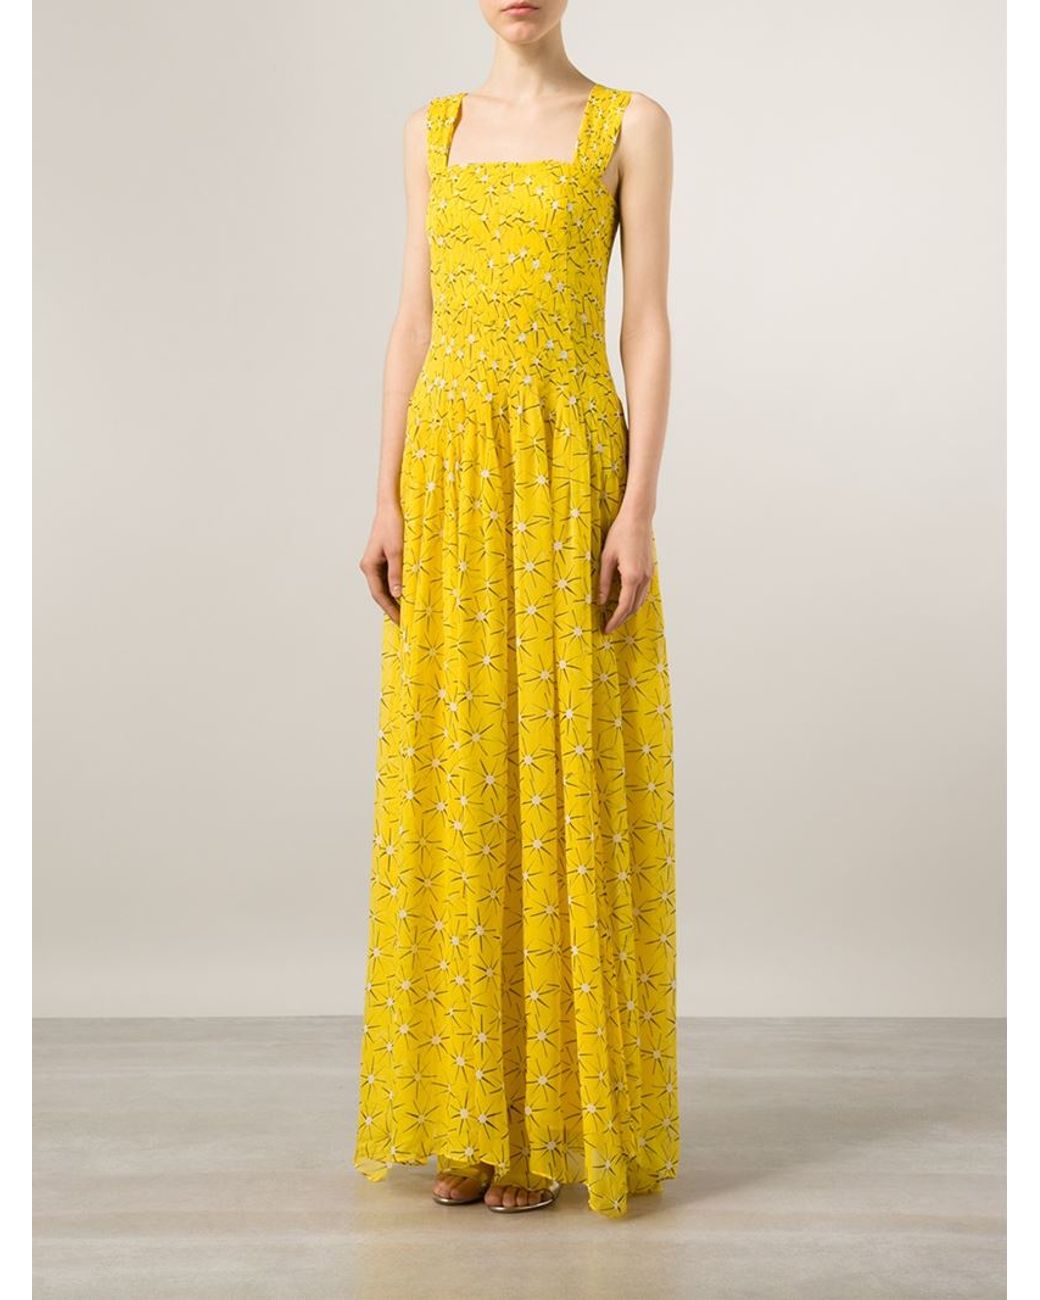 Diane von Furstenberg 'lillie' Pleated Chiffon Dress in Yellow | Lyst